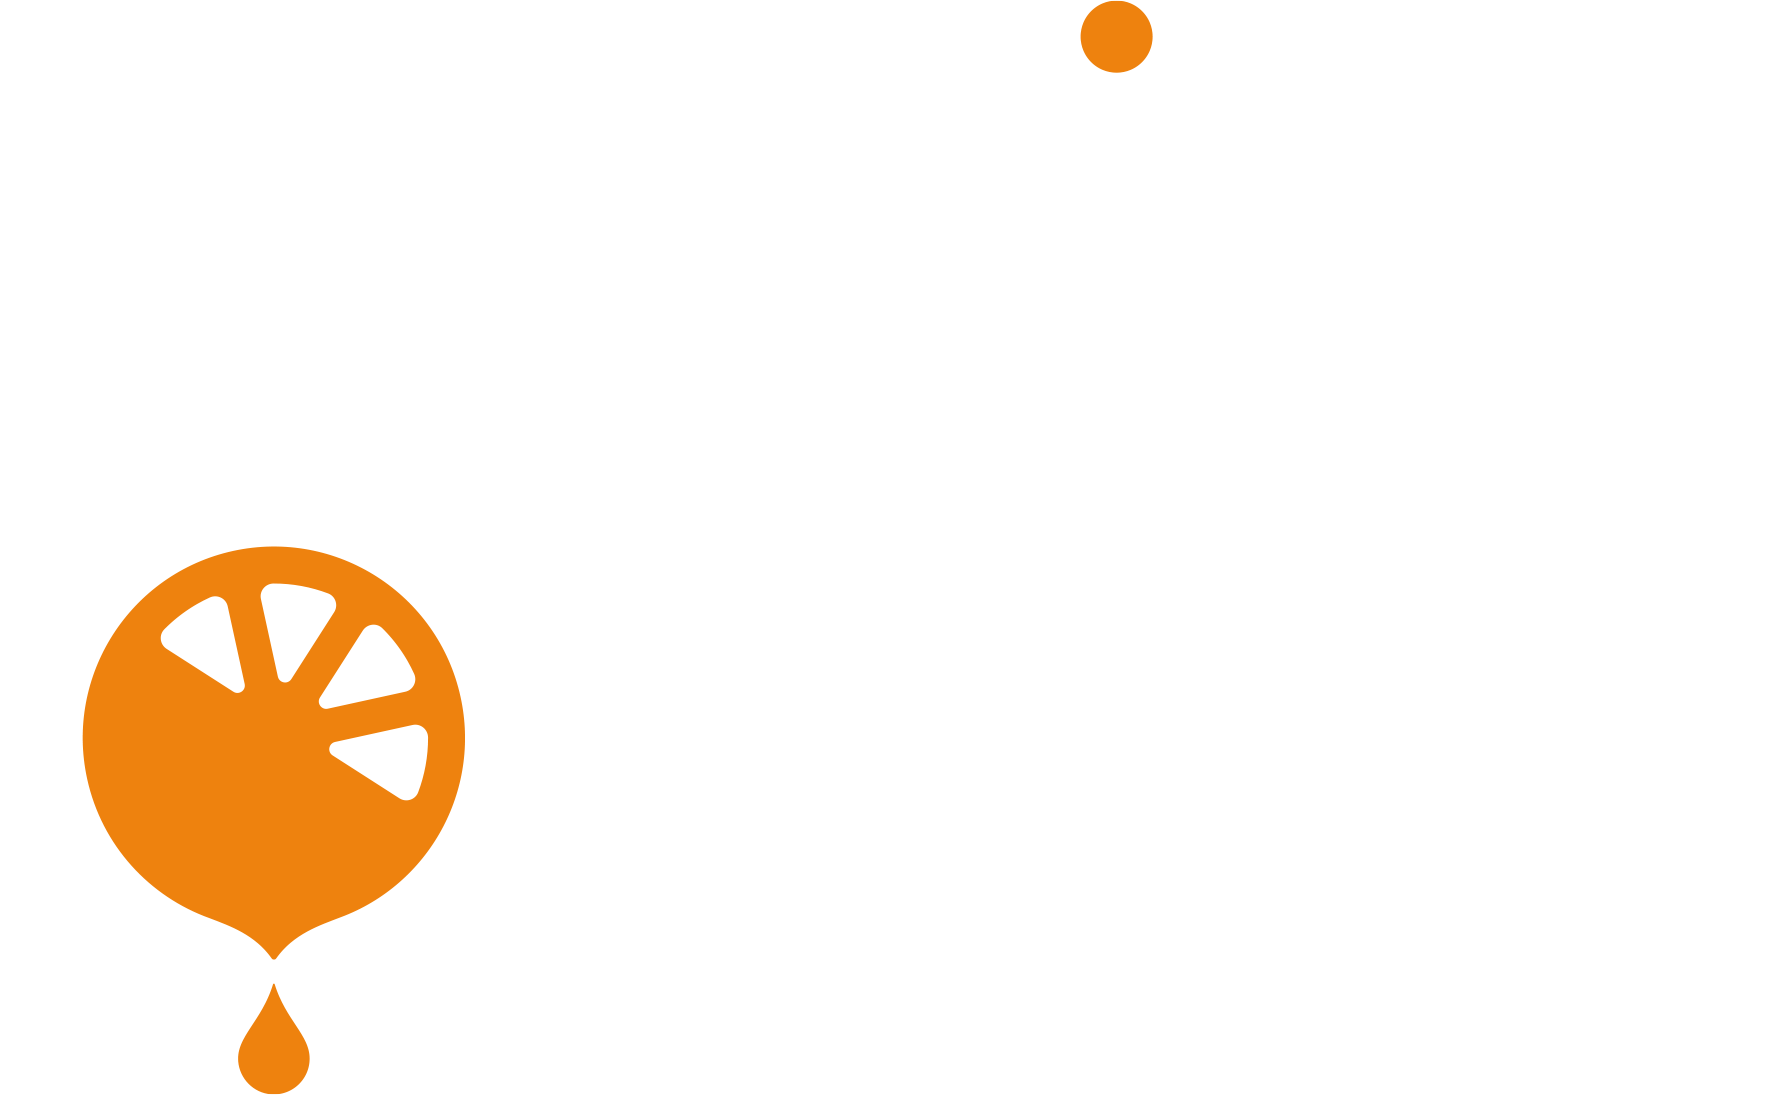 Media Quest Inc Logo